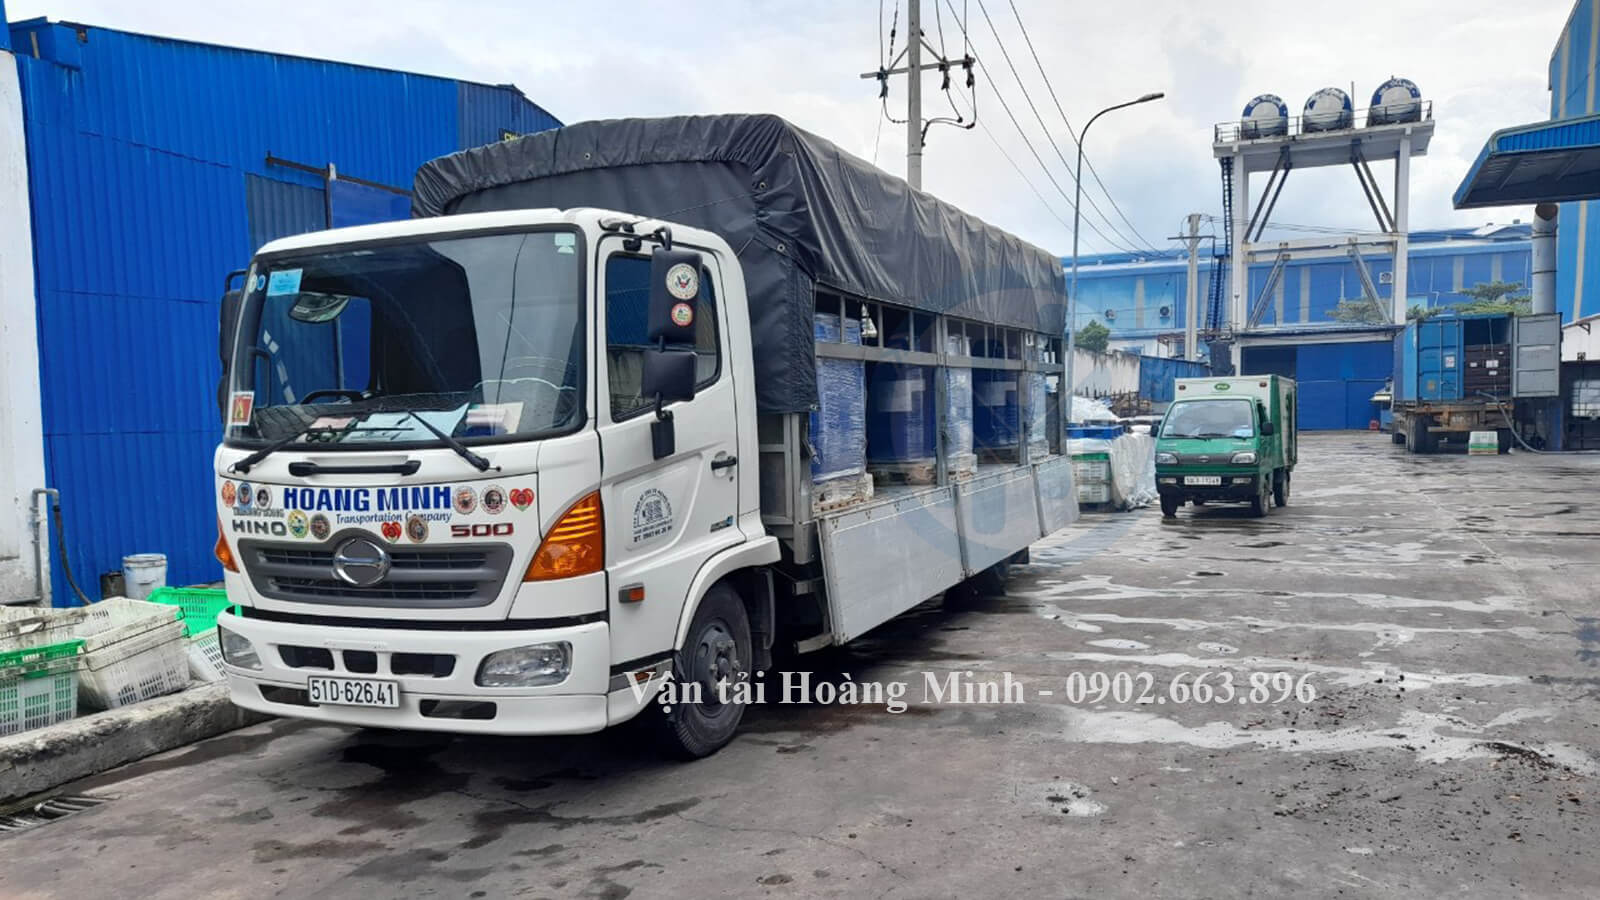 Vận tải Hoàng Minh cho thuê xe tải chở hàng Long Khánh các loại